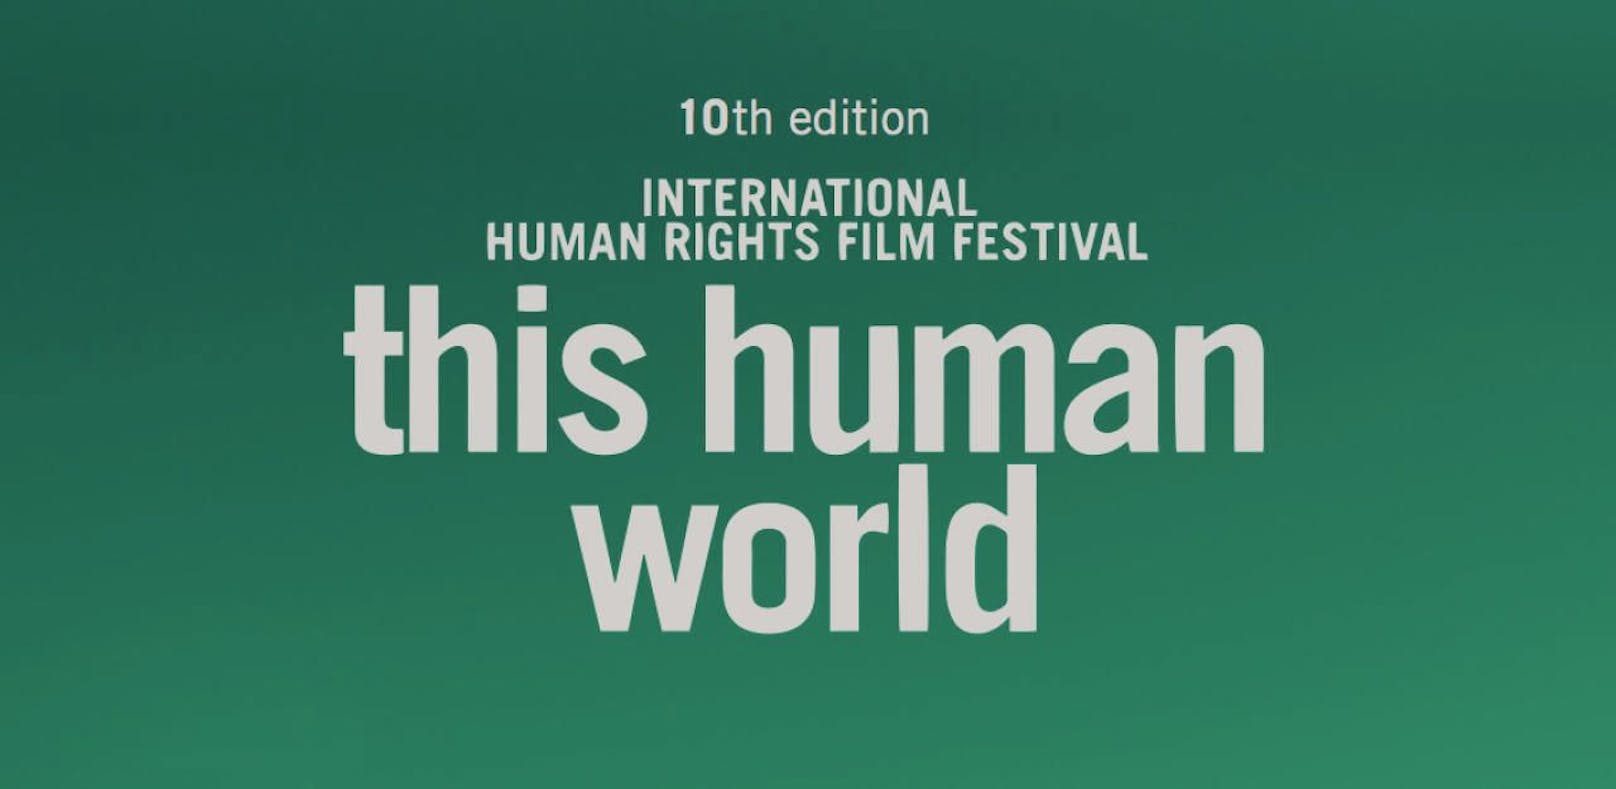 Die Preisverleihung findet im Rahmen des &quot;this human world&quot;-Filmfestivals statt.